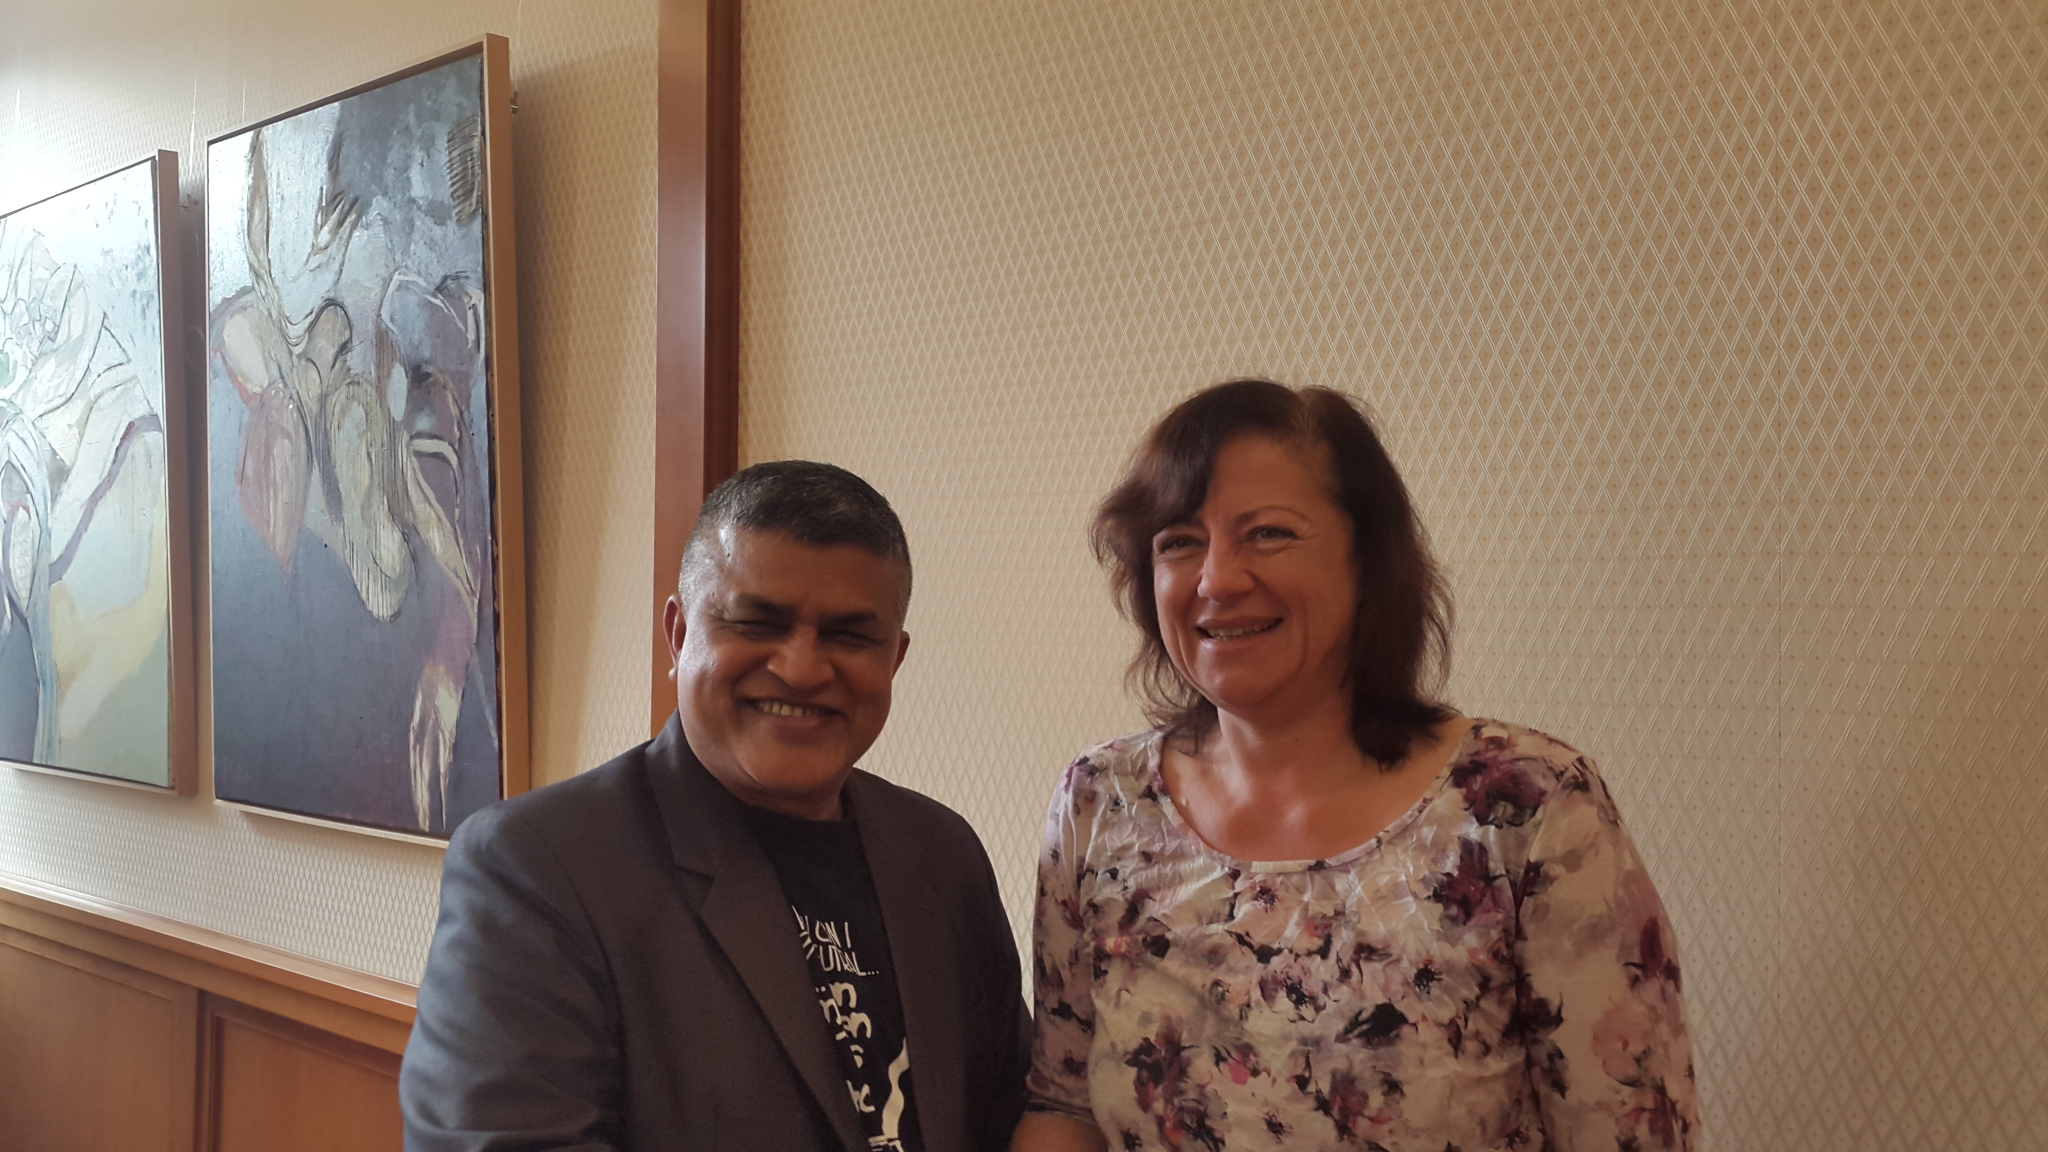 Zunar and Dr. Barber Koefler